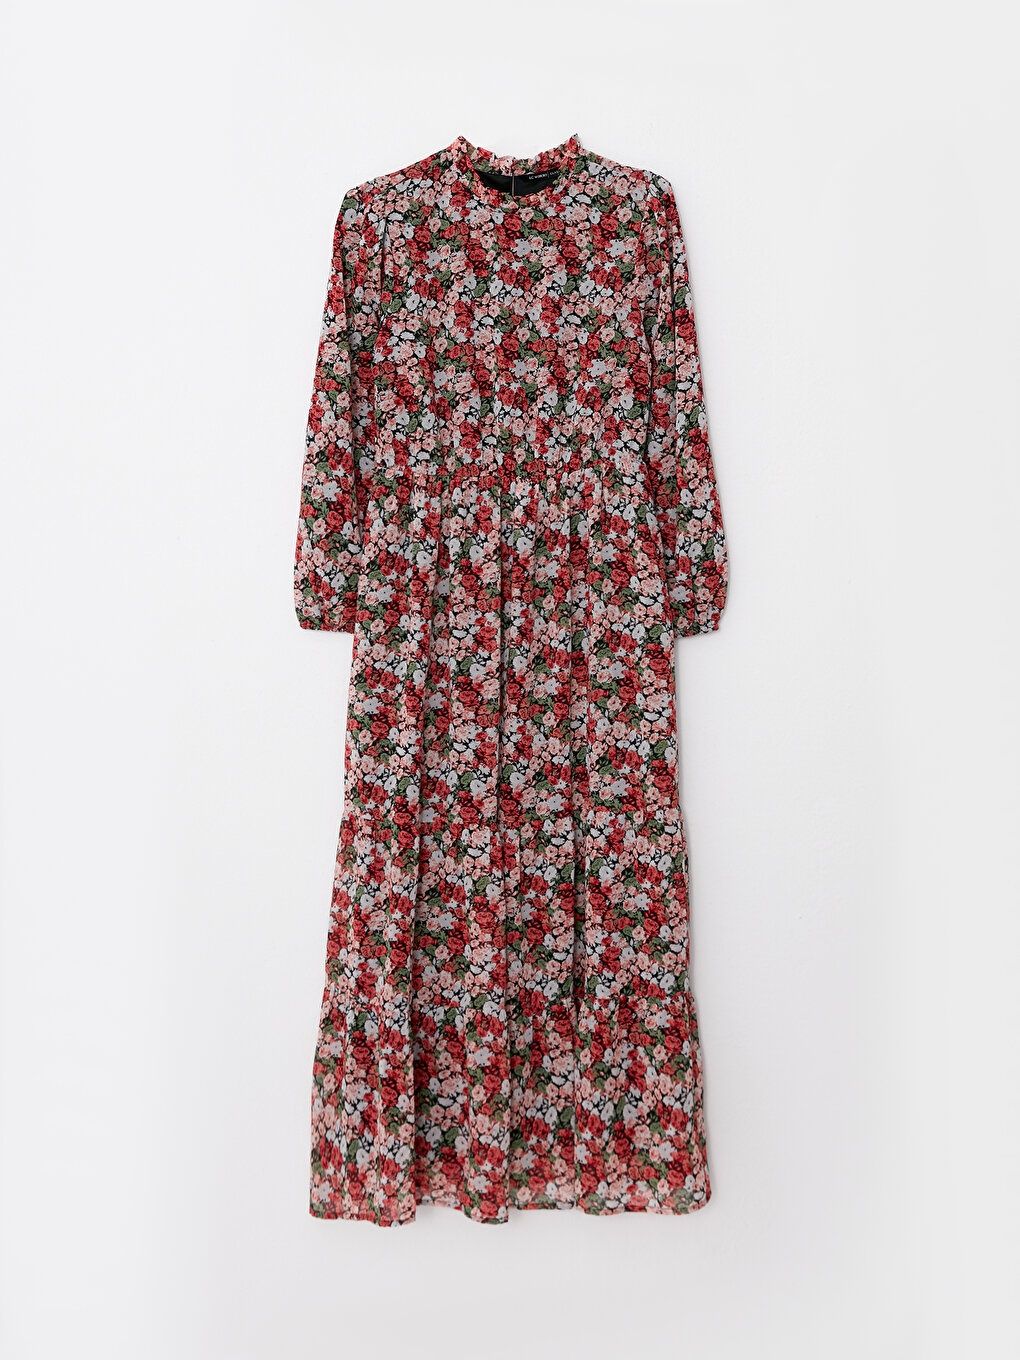 Платье waikiki женское чёрное красное цветочный принт 50-52р